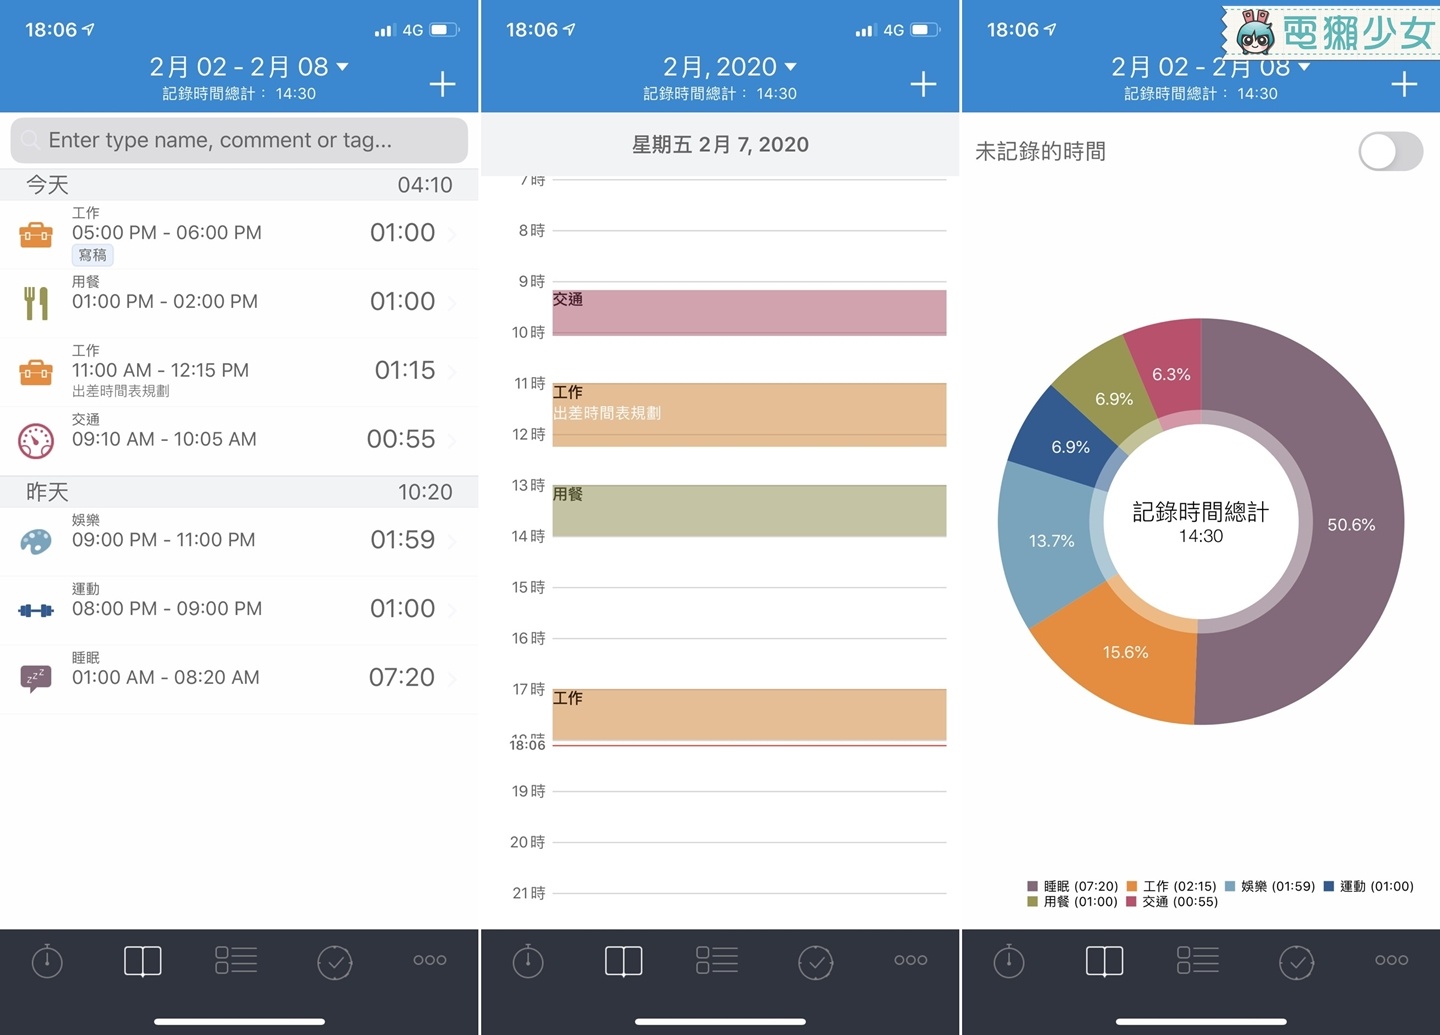 時間紀錄 App 『 TimeTrack 』更了解自己的作息 有效運用每分鐘！Android / iOS